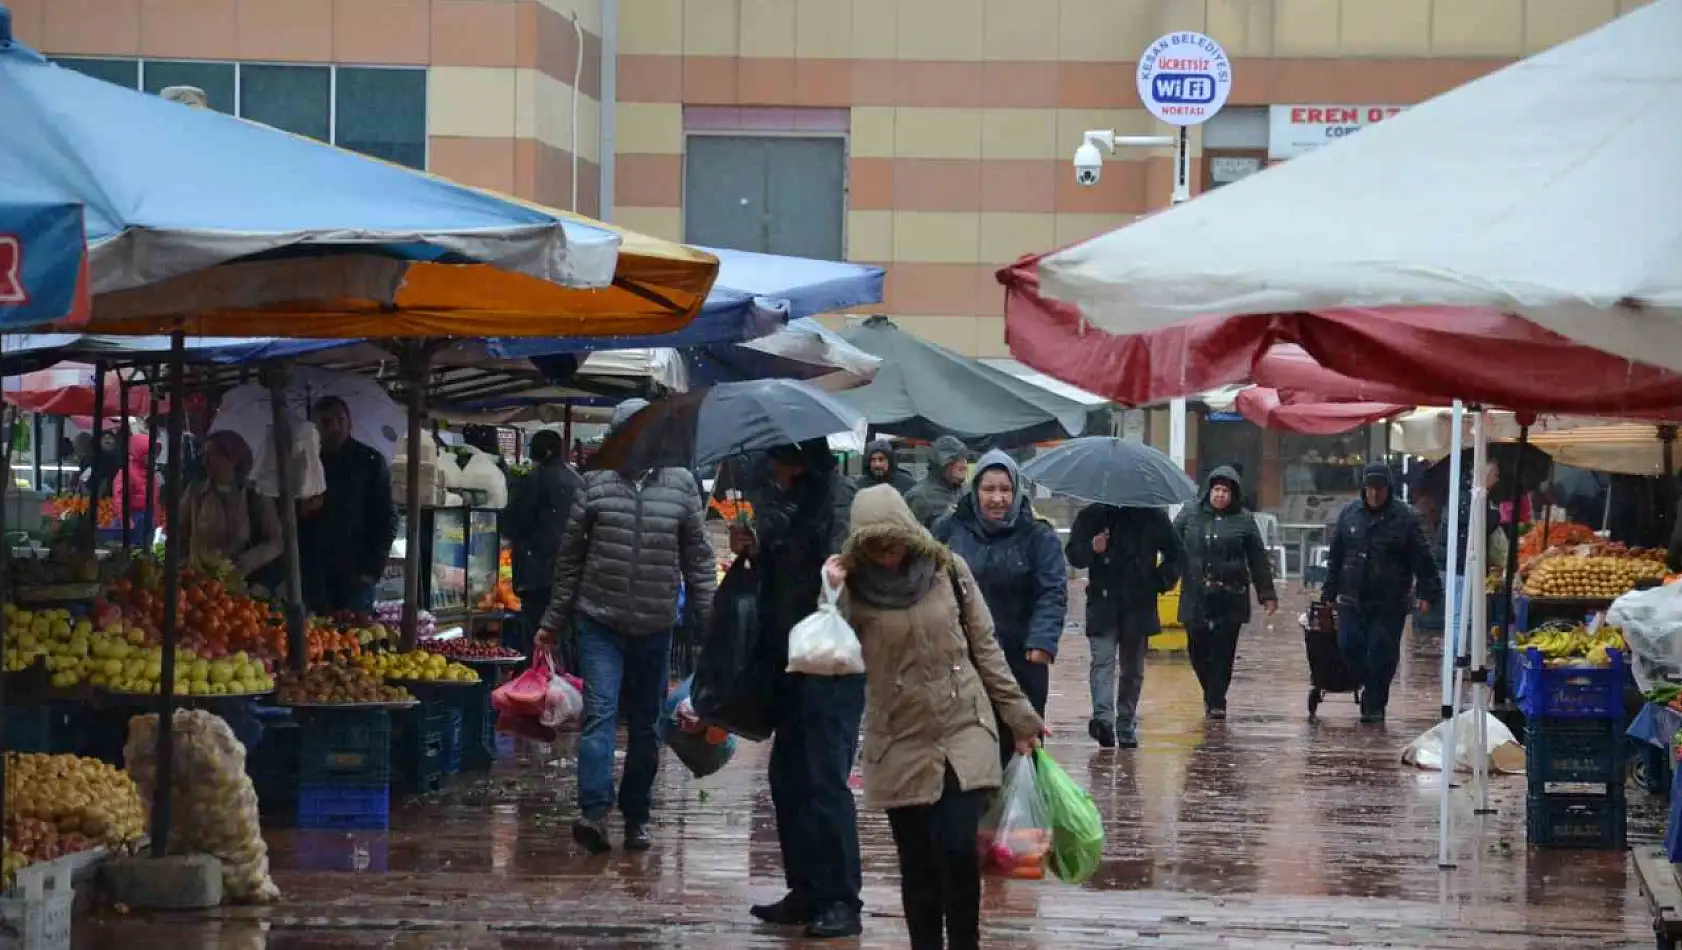 Kayseri'de bugün semt semt kurulan pazar yerleri